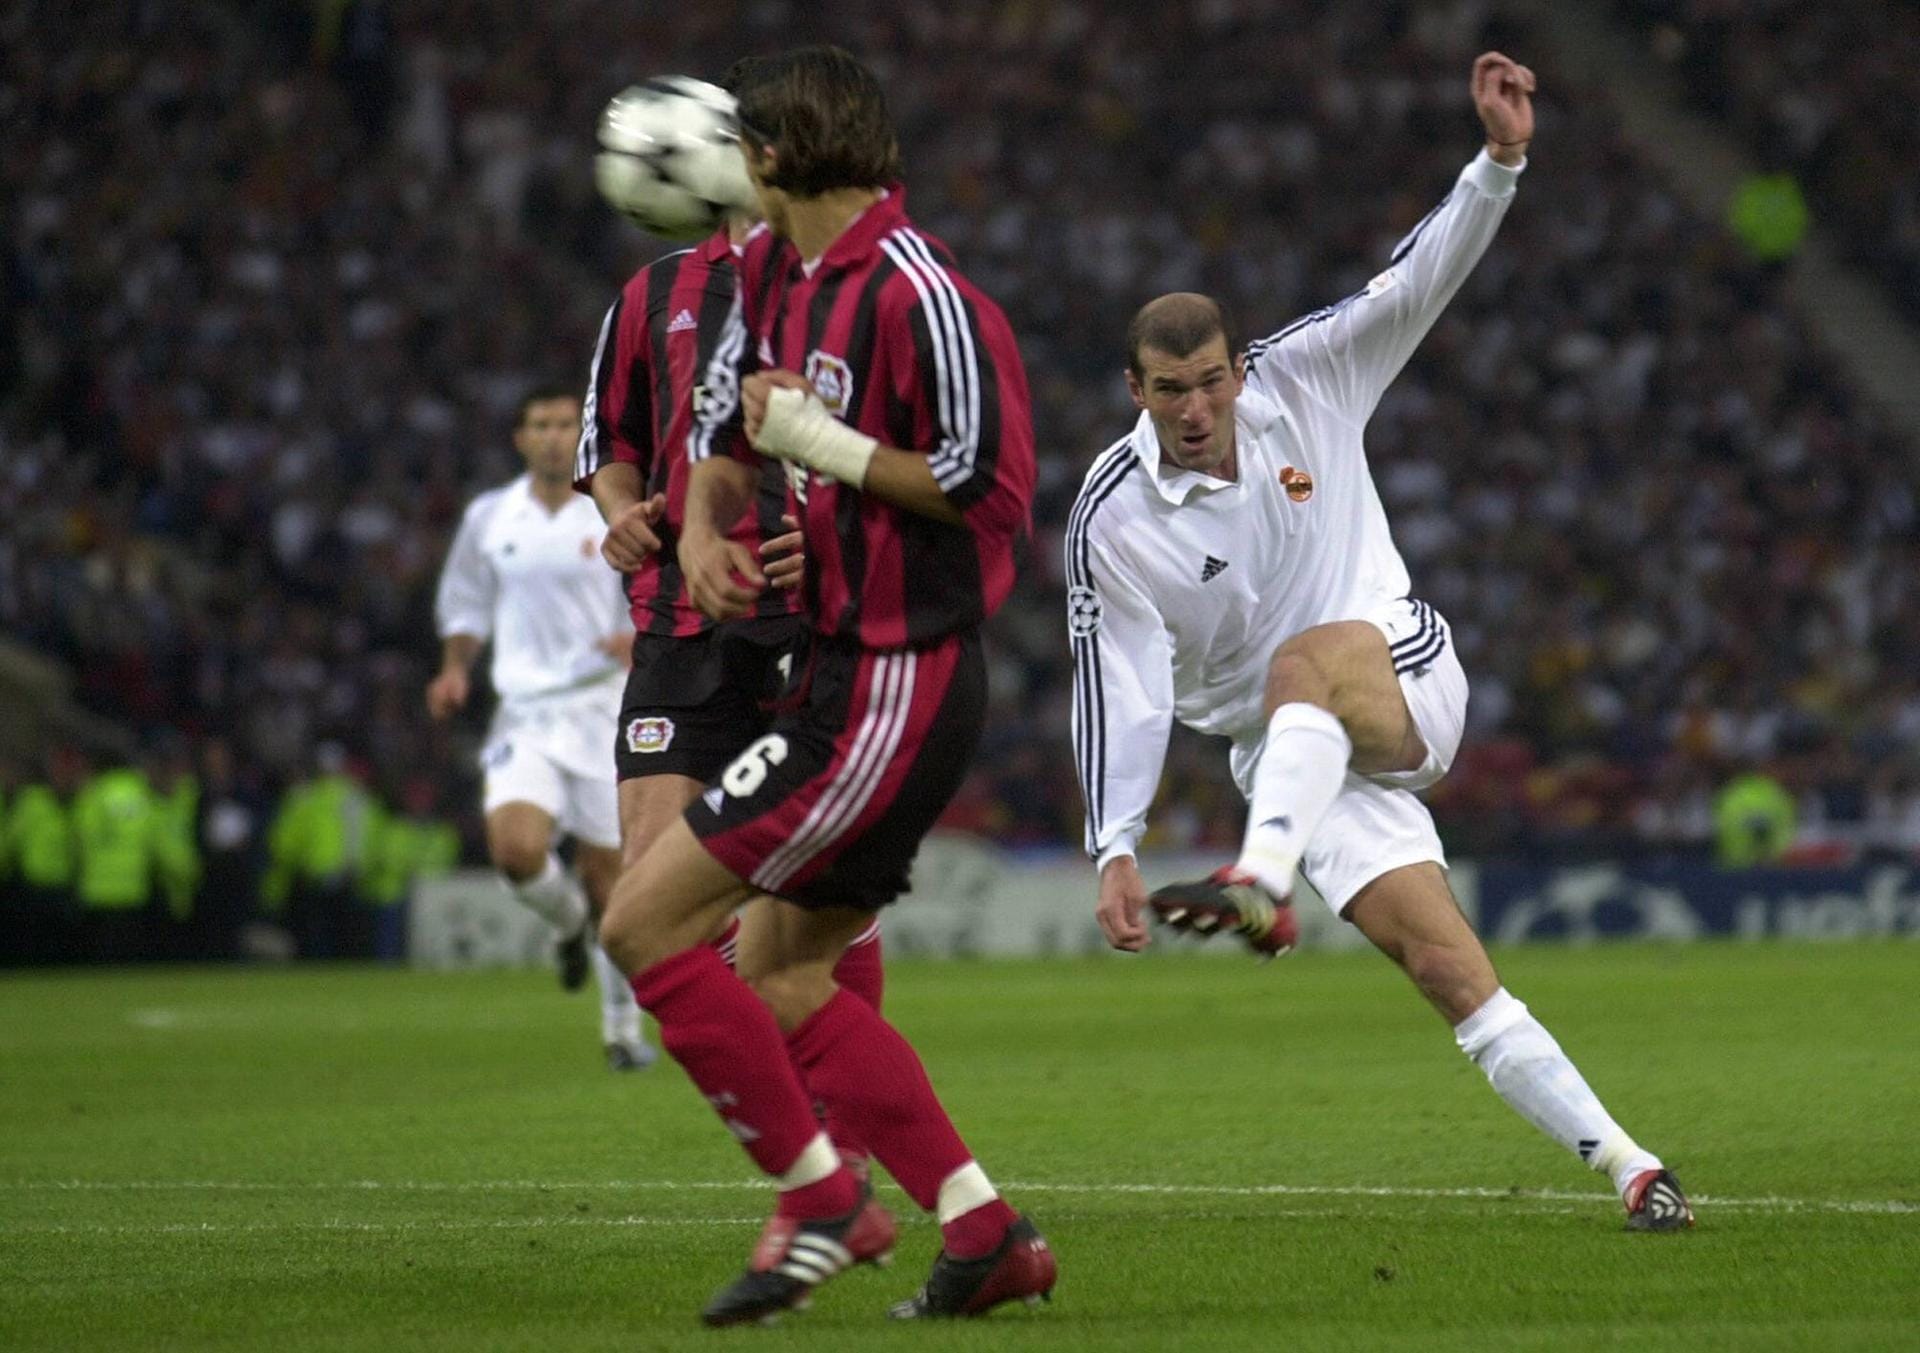 Zinedine Zidane (47): Als Spieler konnte er nur einen Champions-League-Triumph feiern, mit Real Madrid (2001/02), als "Zizou" im Finale gegen Leverkusen per Volley-Schuss den Siegtreffer markierte. Zuvor hatte sich der Franzose bereits mit dem Welt- (1998) und Europameistertitel (2000) gekrönt. Als Trainer machte sich Zidane schließlich auch zur Königsklassen-Legende, denn mit Real Madrid gewann er den Pott drei Mal in Folge (2015/16, 2016/17 und 2017/18).